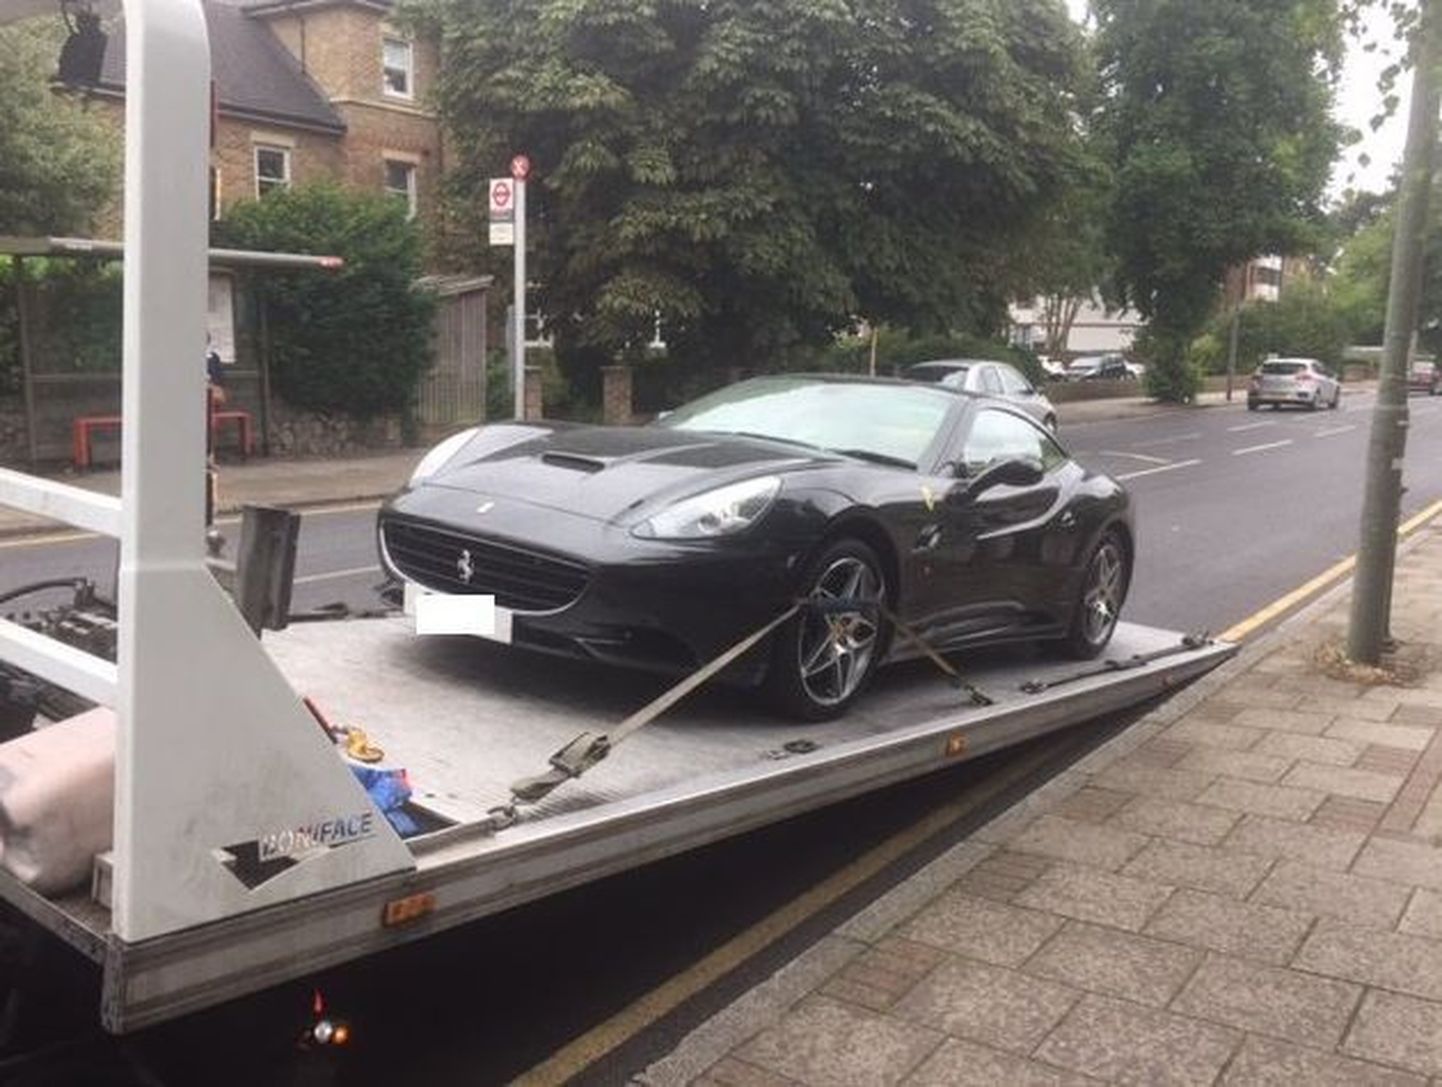 Londoni politsei poolt konfiskeeritud Ferrari